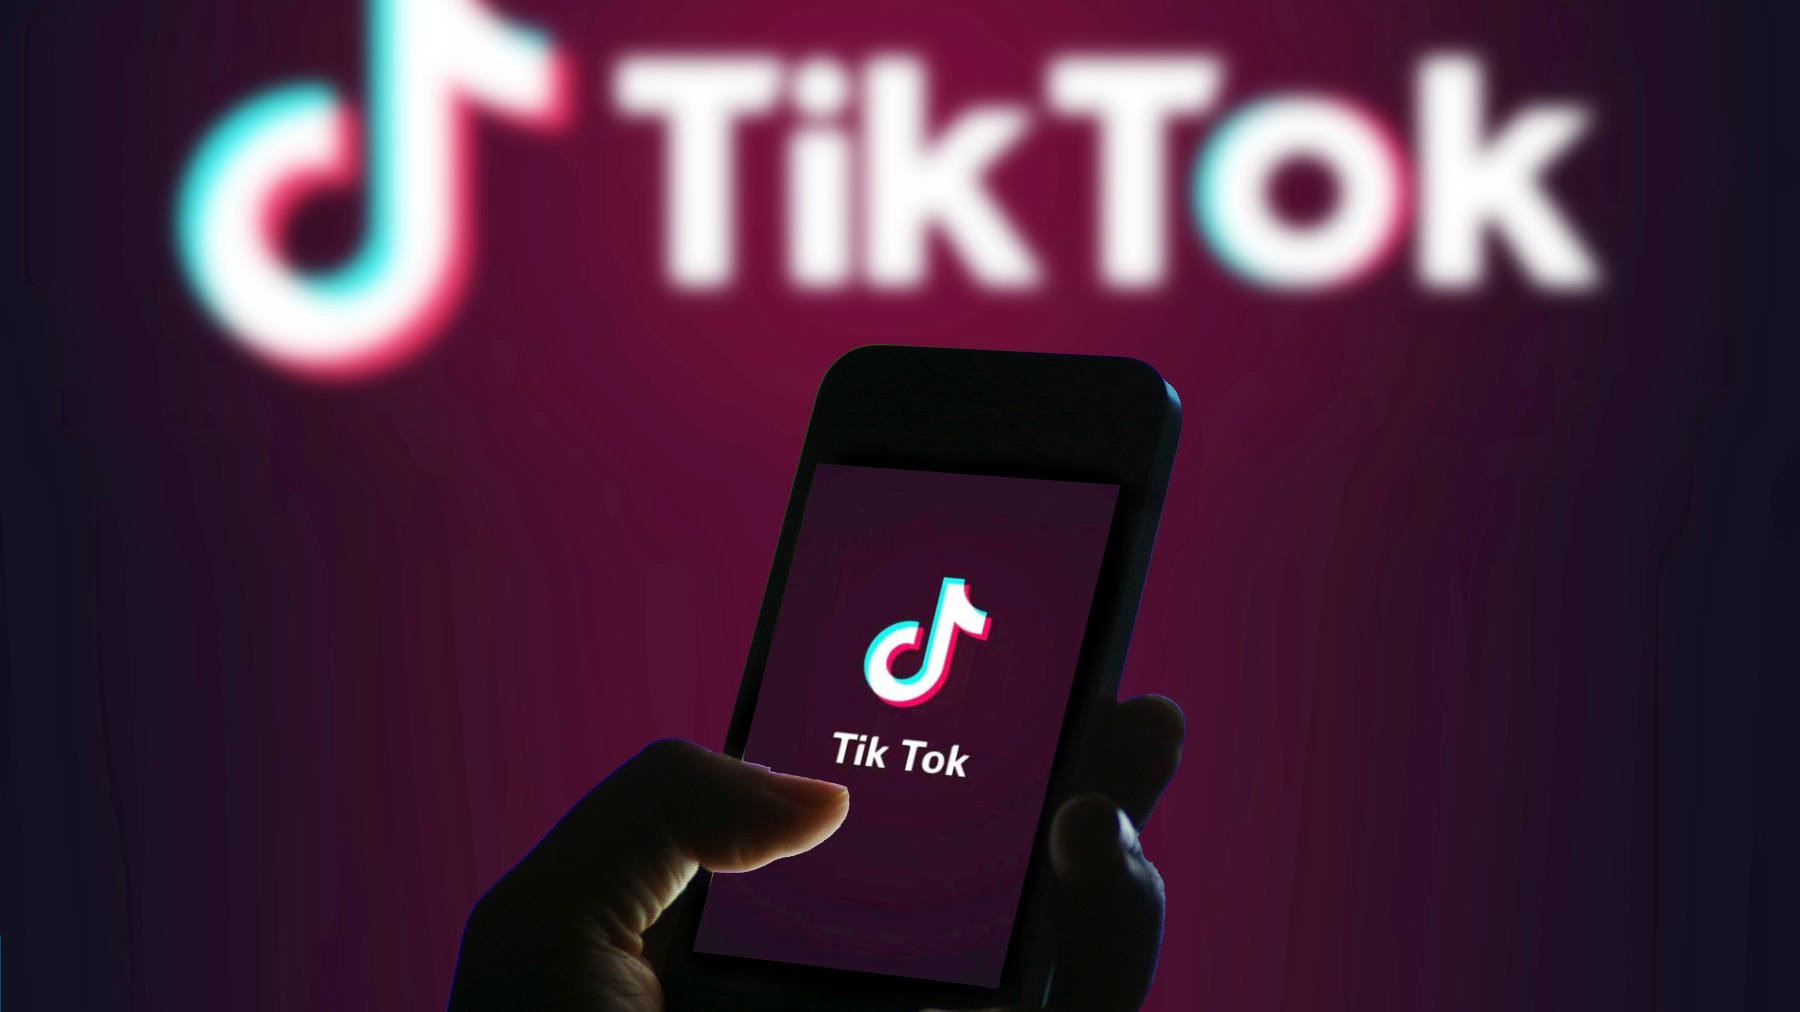 TikTok стал самым популярным сервисом для поиска информации в Сети у поколения Z